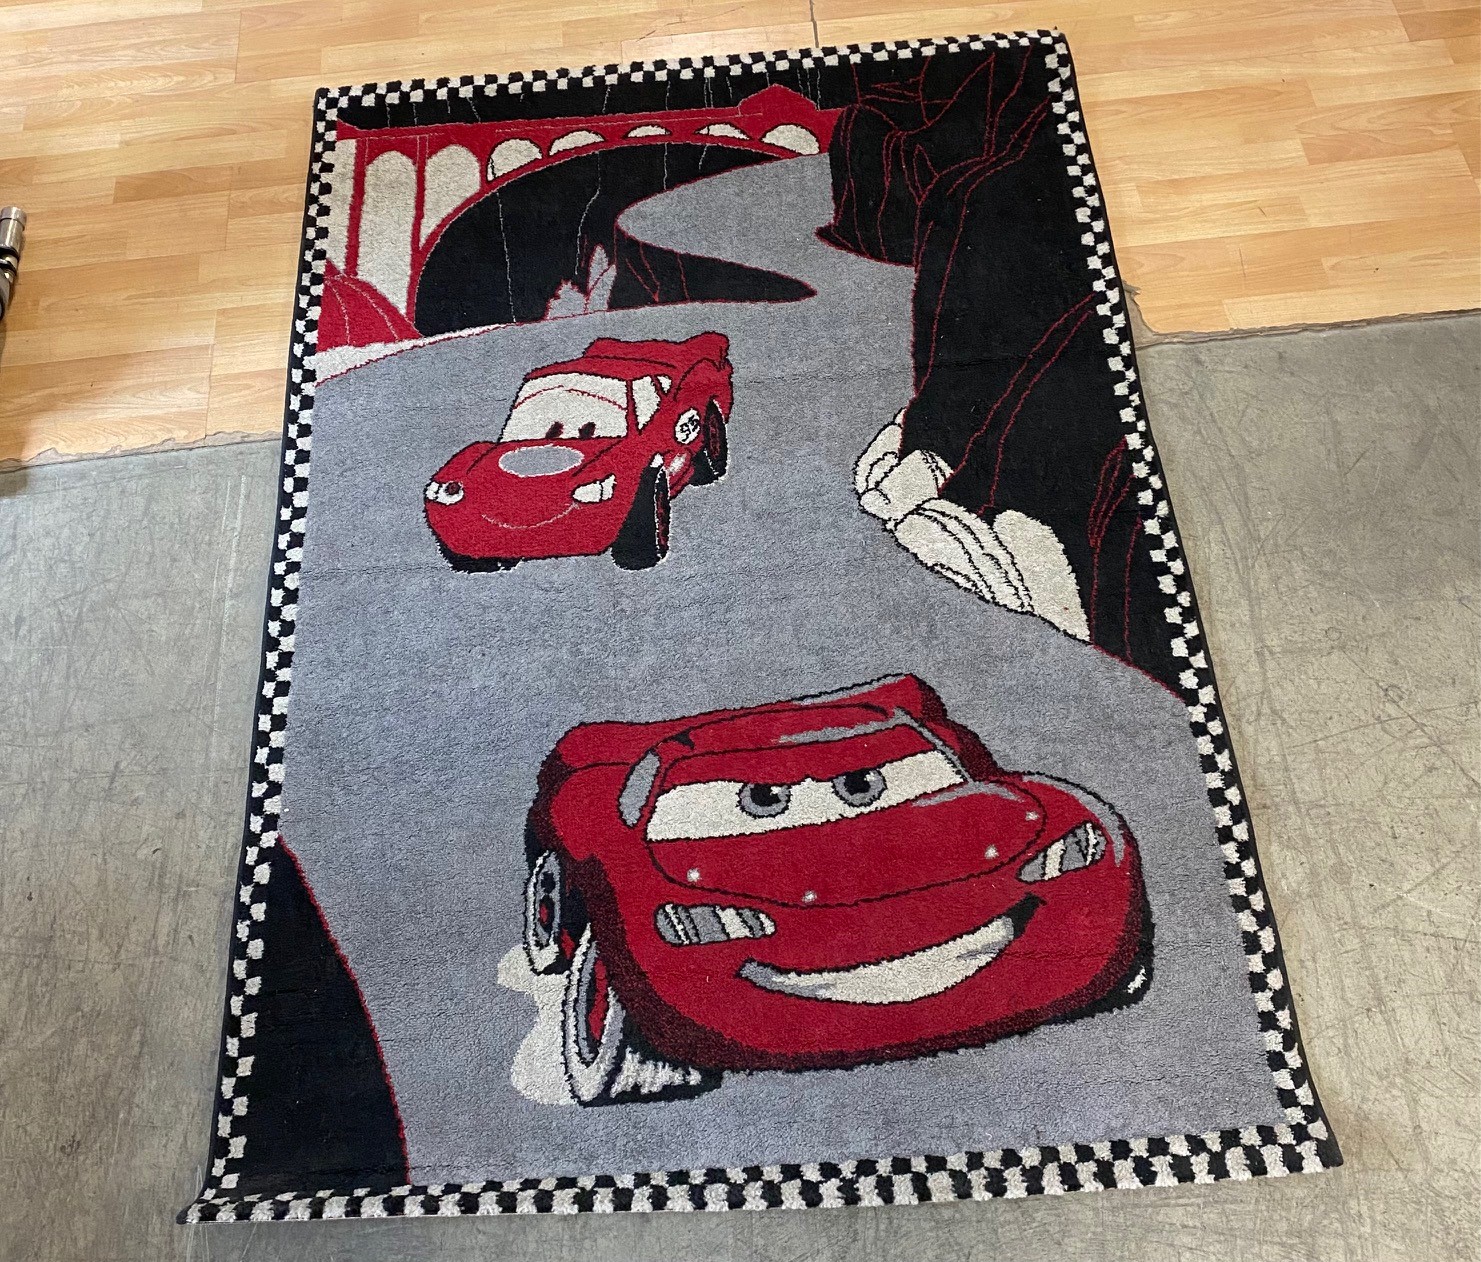 Titi Teppich Kinderzimmer Racer Cars Ausstellungsstück